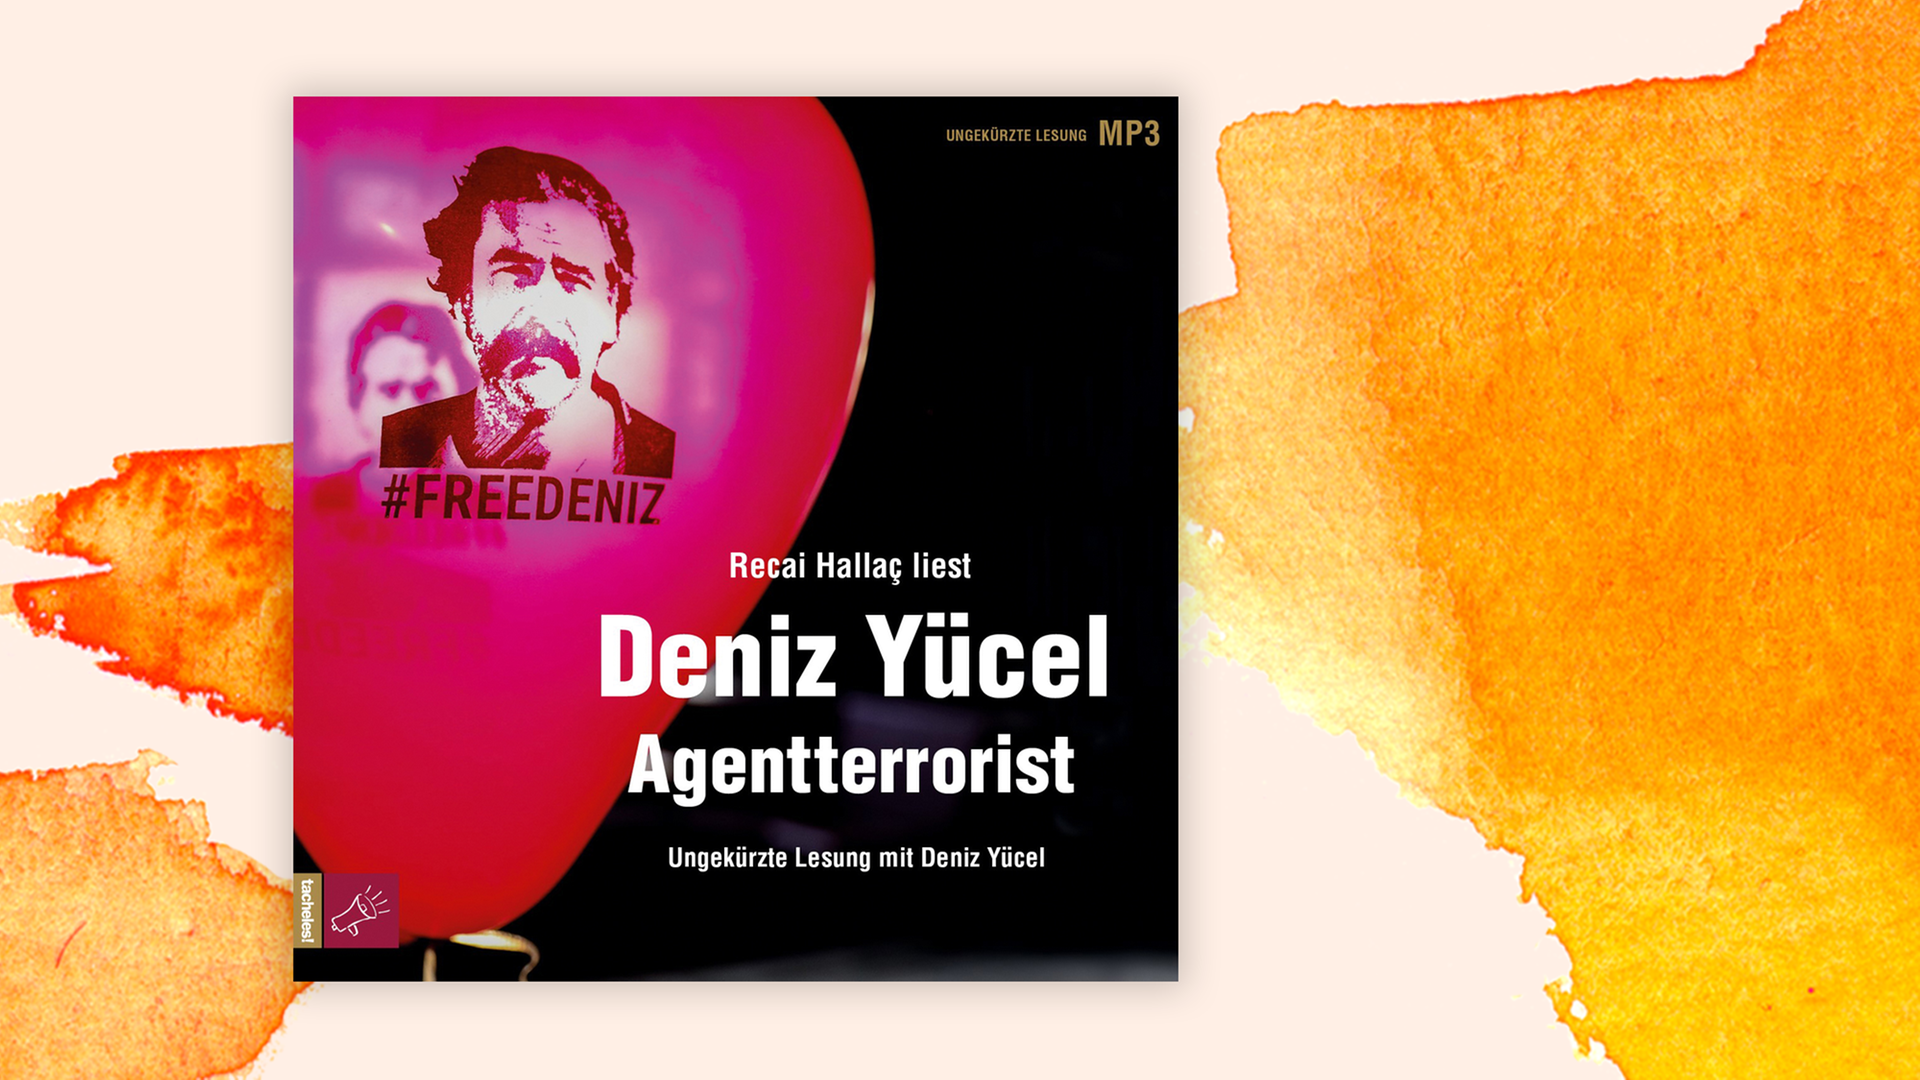 Das Cover des Hörbuchs "Agentterrorist" von Deniz Yücel.